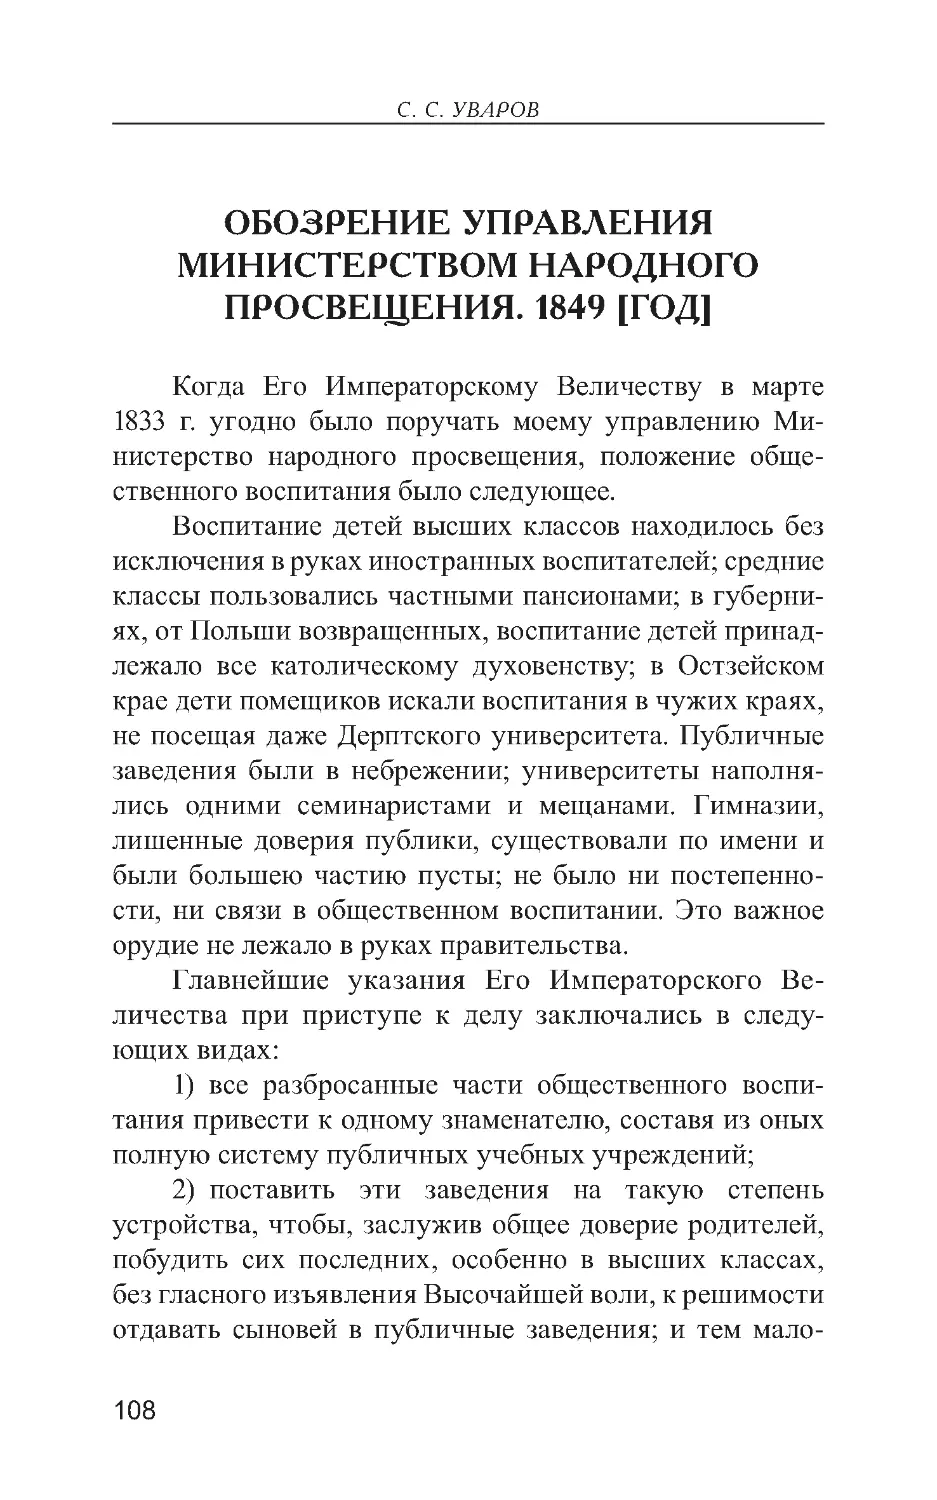 Обозрение управления Министерством народного просвещения 1849 [год]